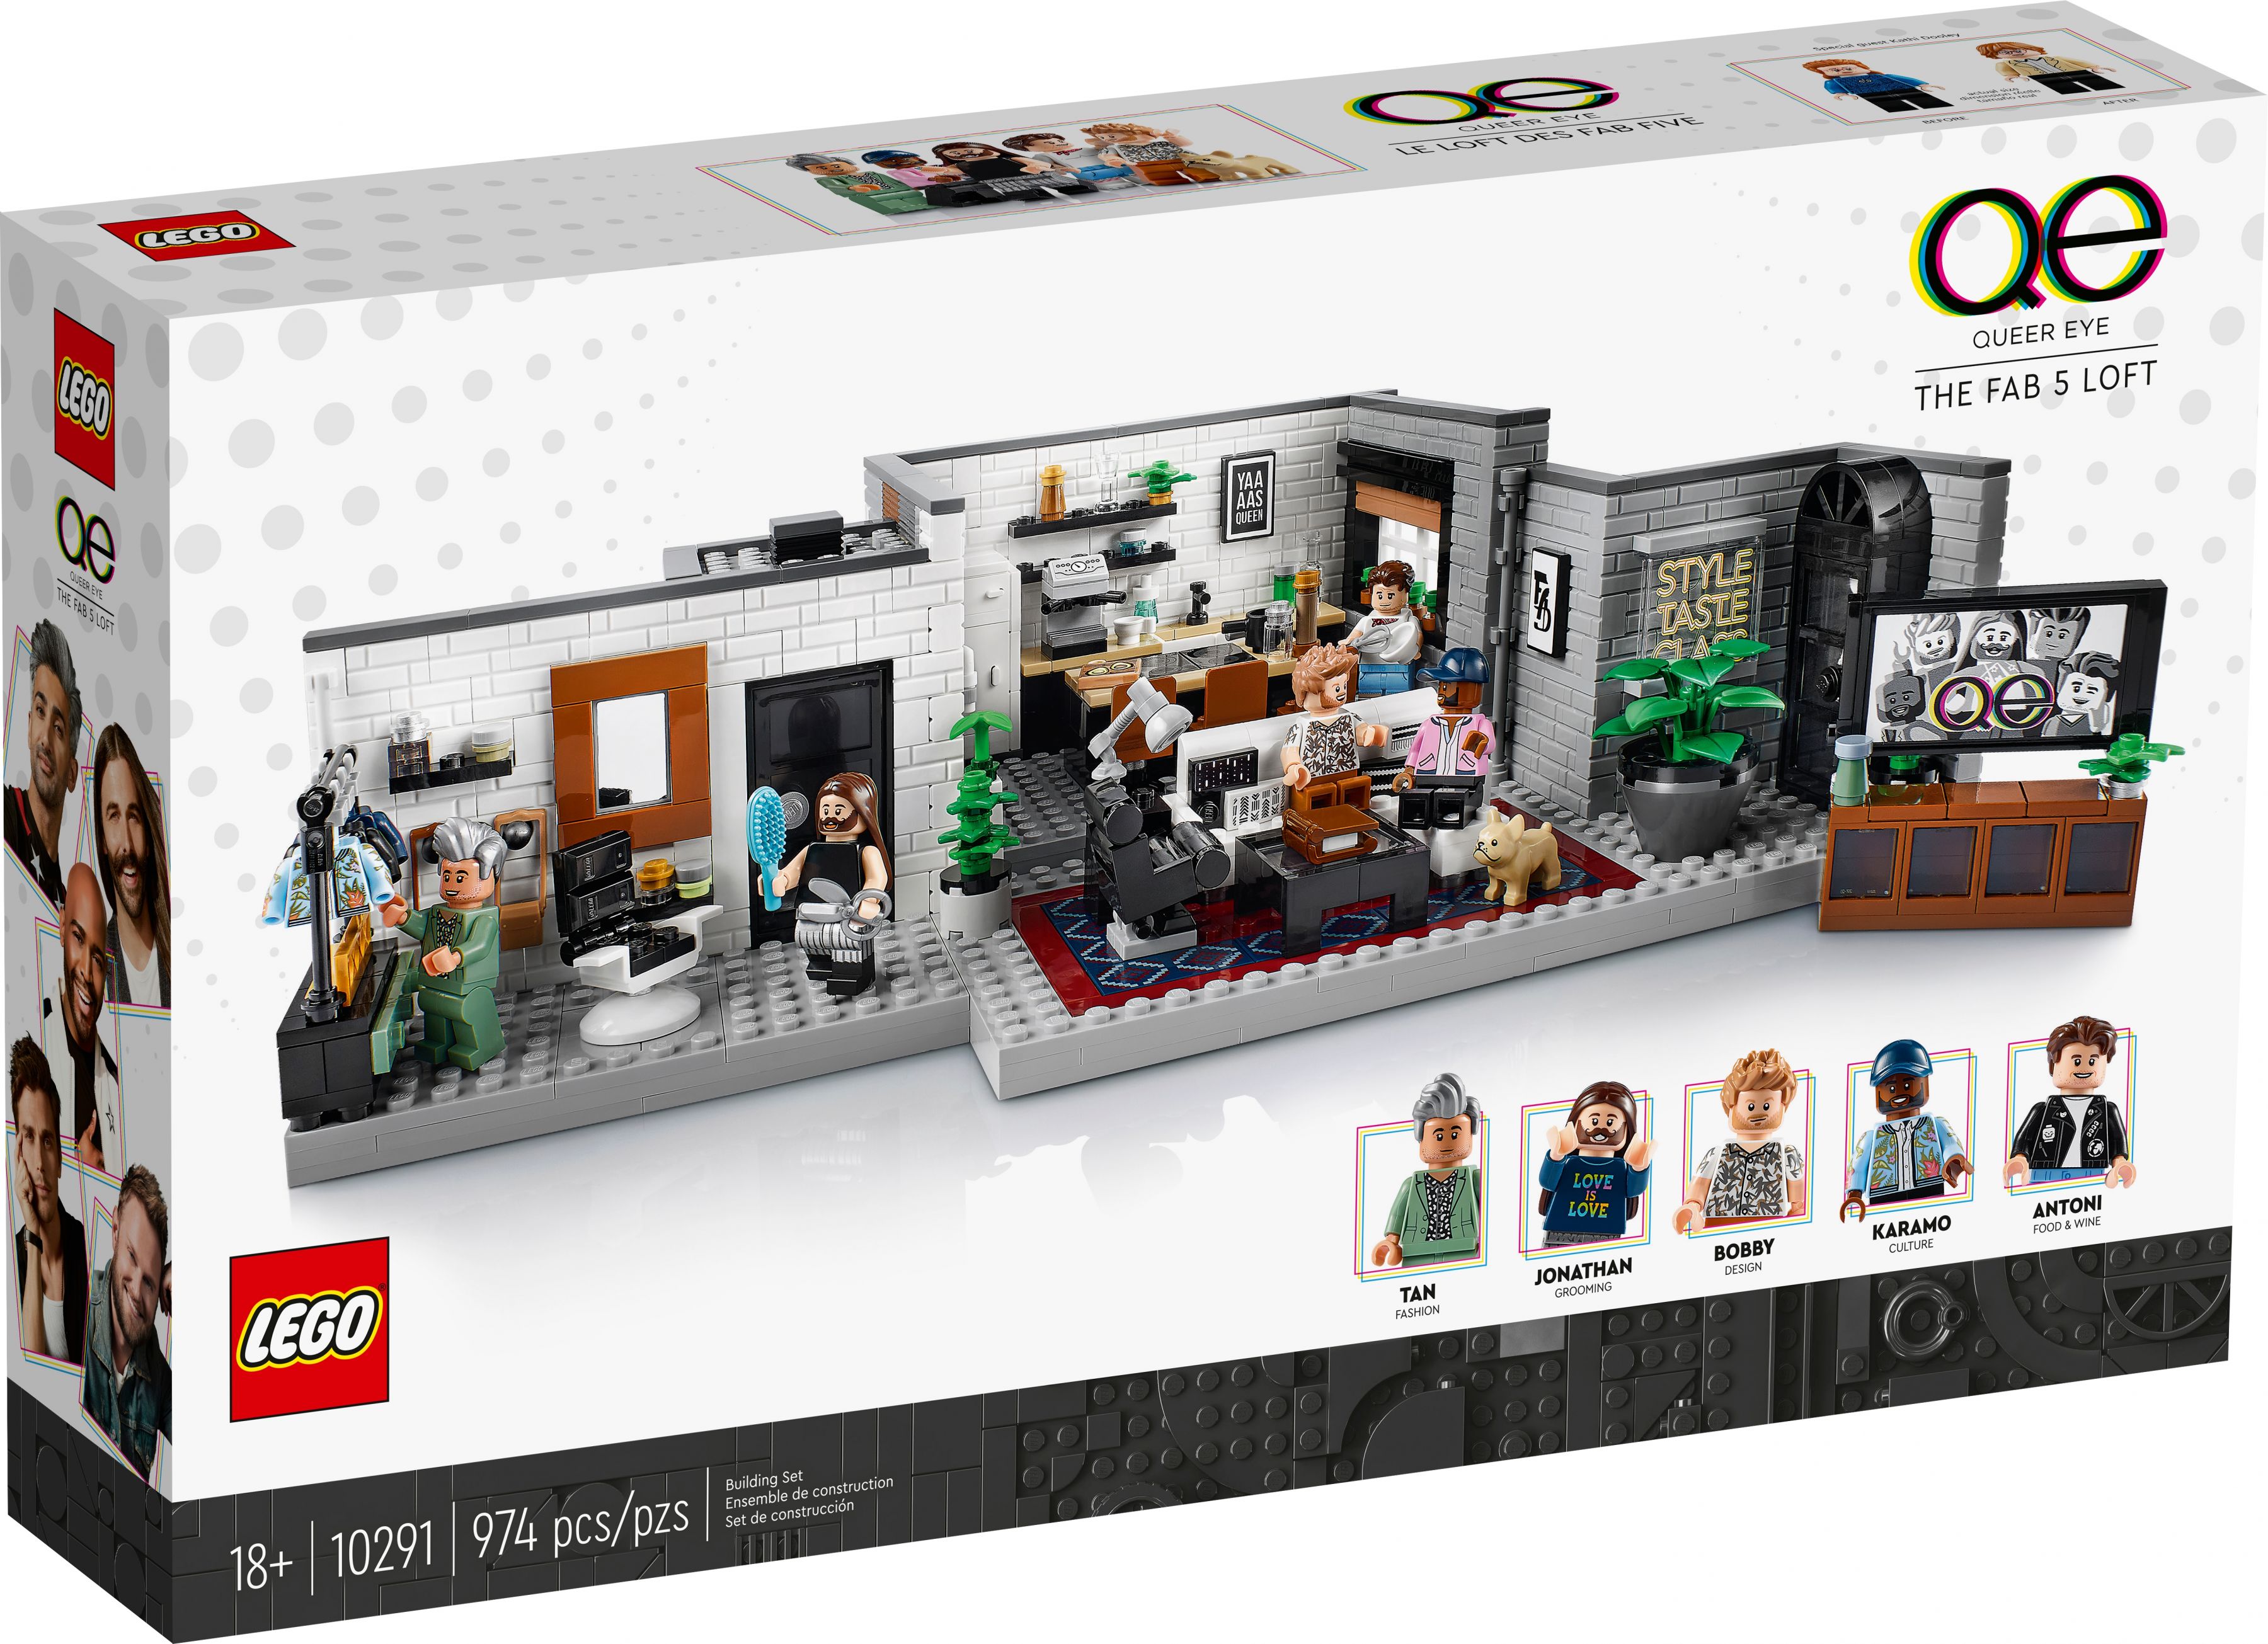 LEGO Advanced Models 10291 Queer Eye – Das Loft der Fab 5 LEGO_10291_box1_v39.jpg